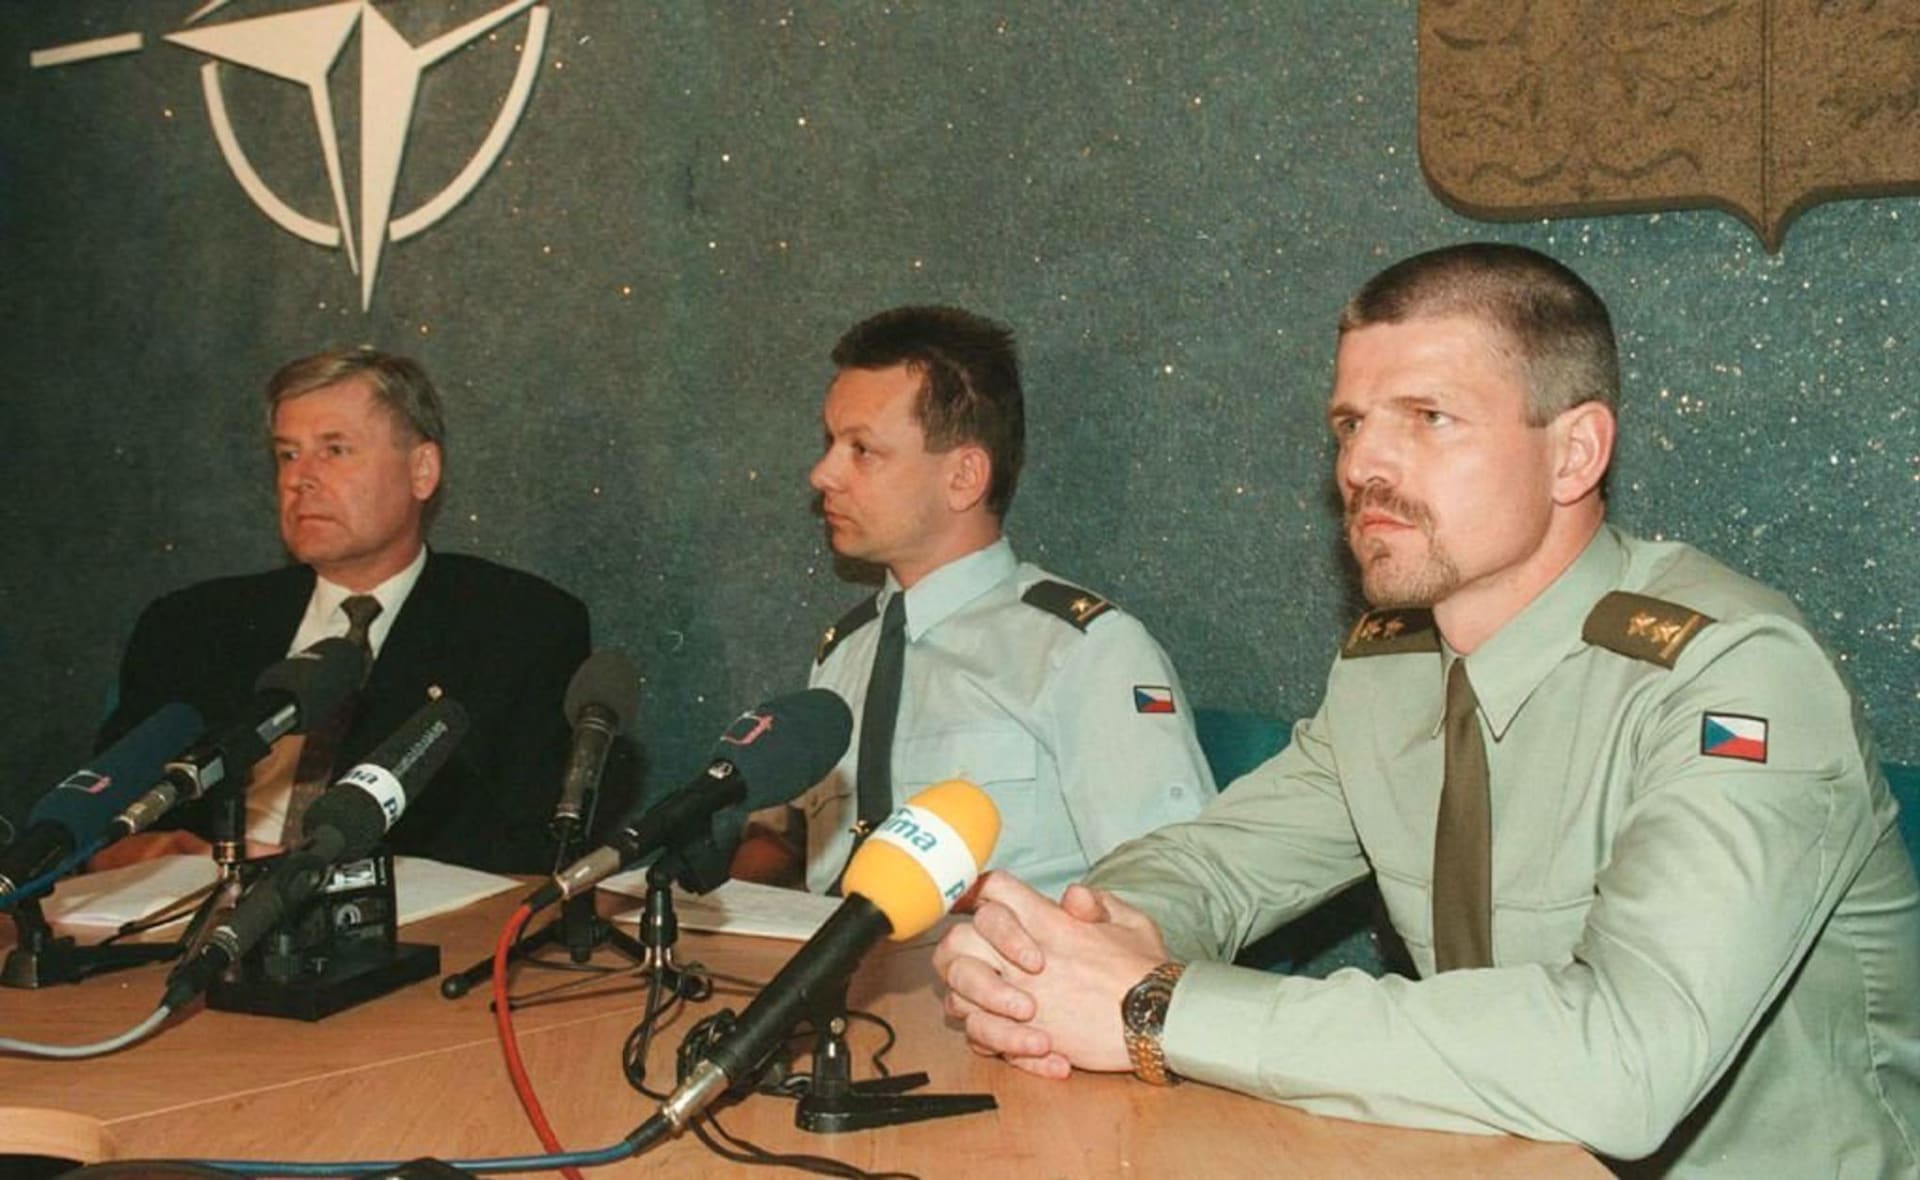 Z archivu: Petr Pavel věnoval celý svůj život vojenské kariéře. Na snímku je coby podplukovník na začátku svého působení v Nizozemsku na velitelství NATO.